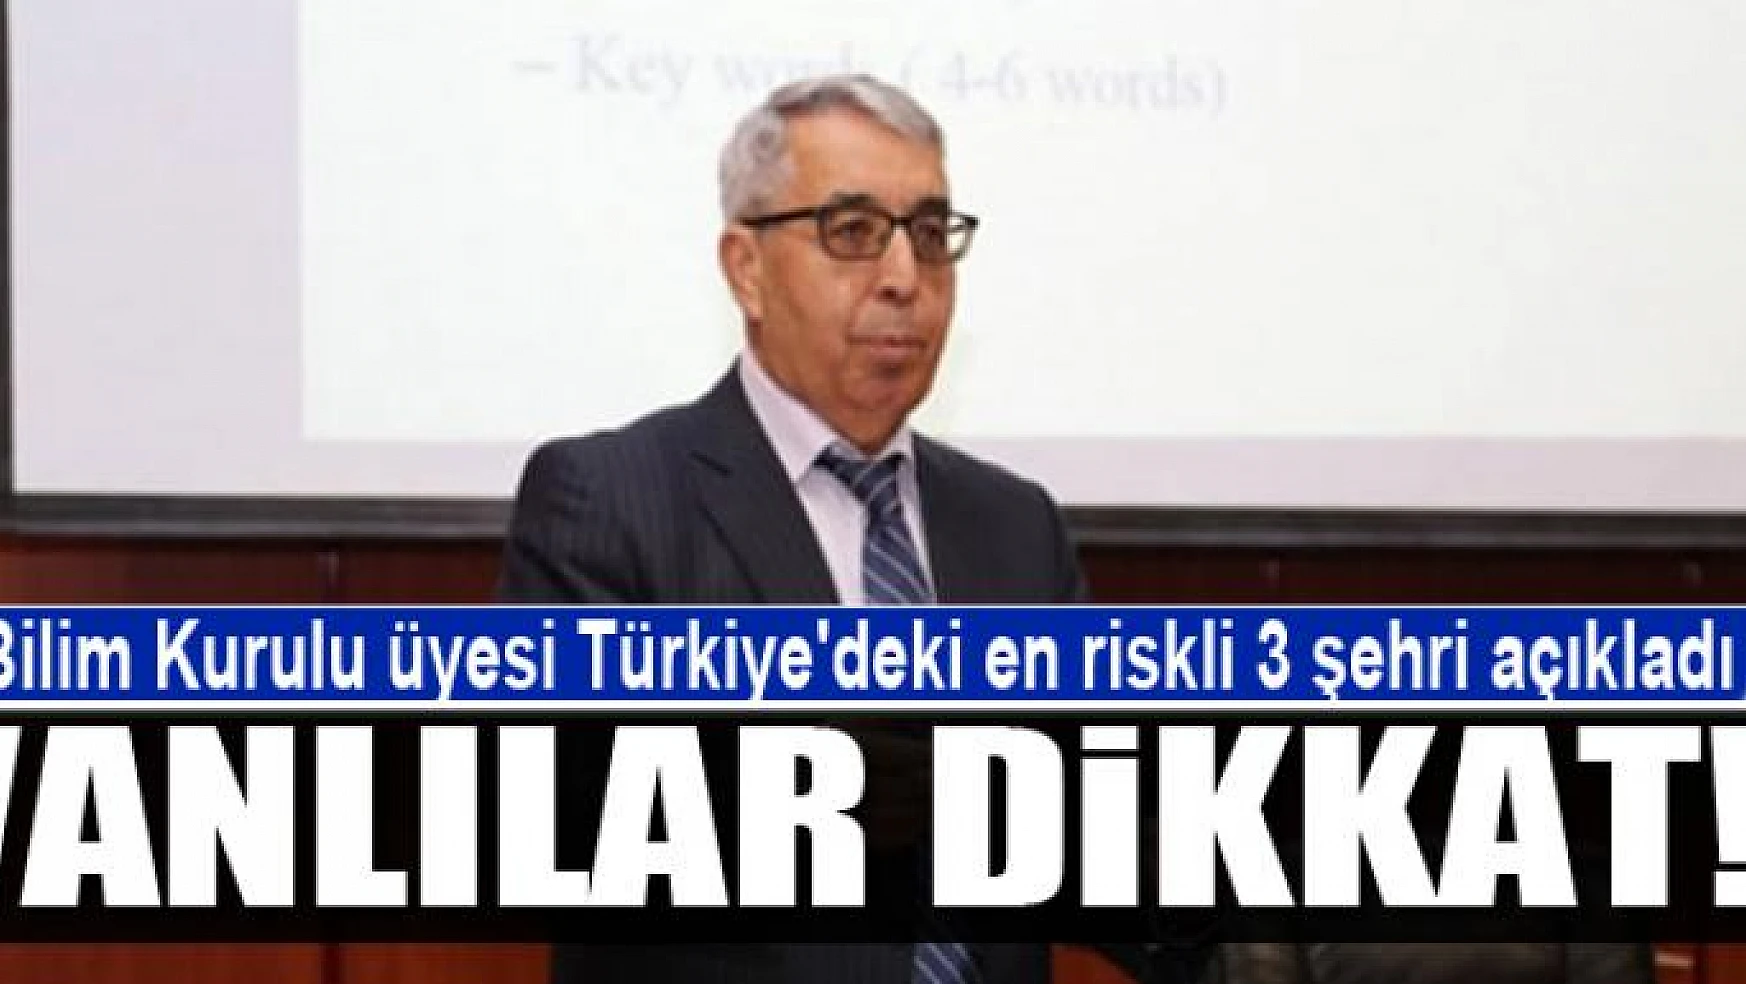 Bilim Kurulu üyesi Türkiye'deki en riskli 3 şehri açıkladı